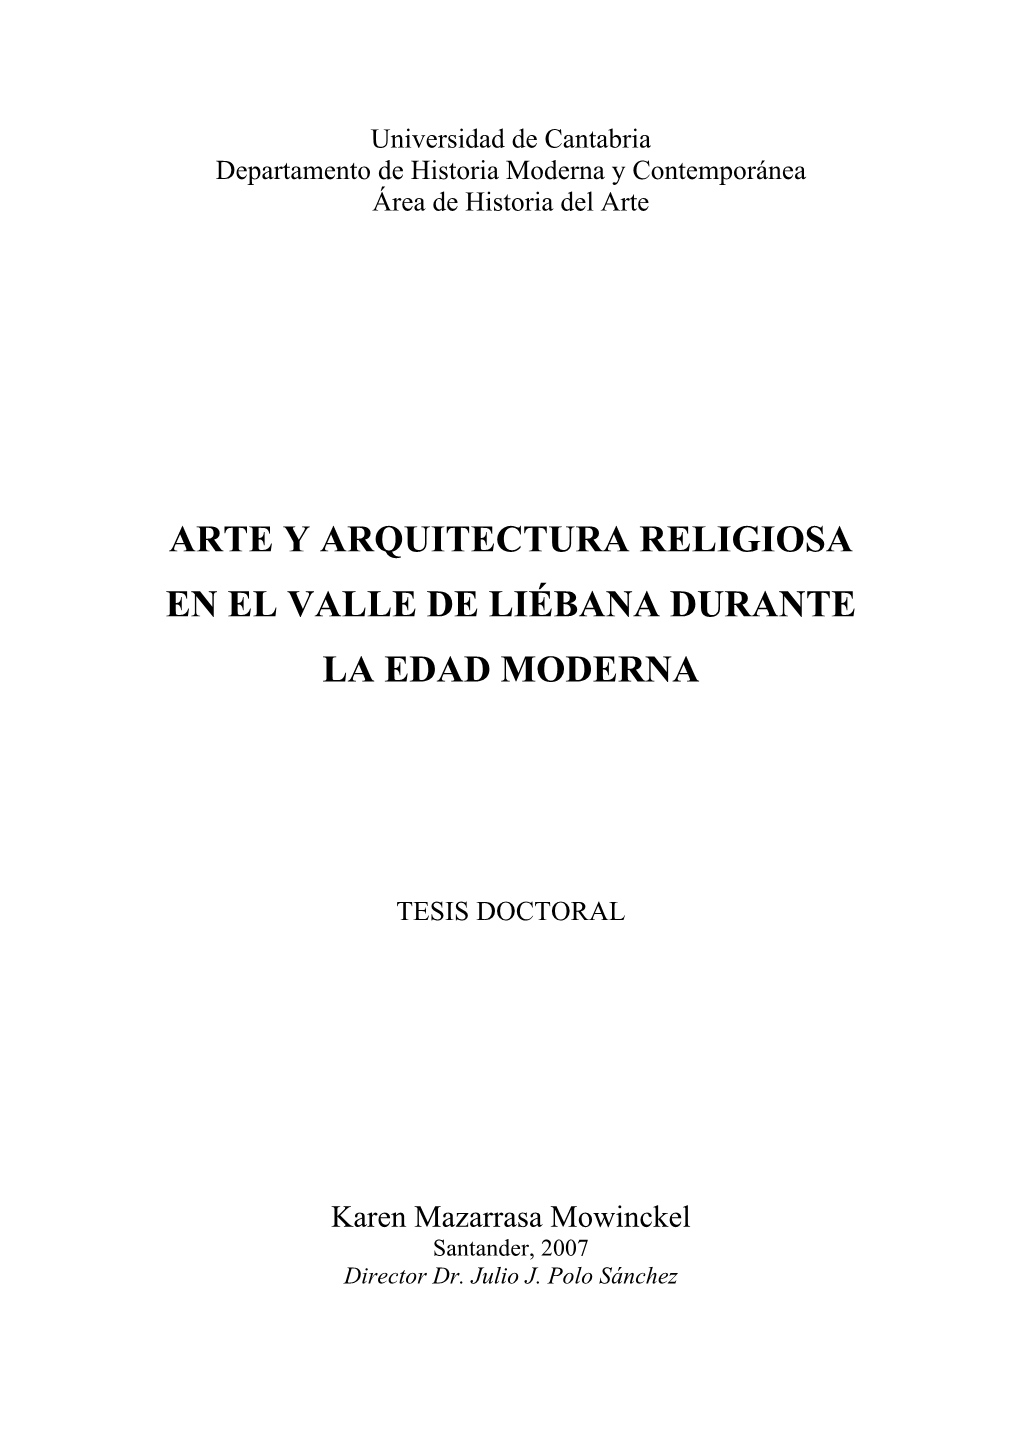 Arte Y Arquitectura Religiosa En El Valle De Liébana En La Edad Moderna